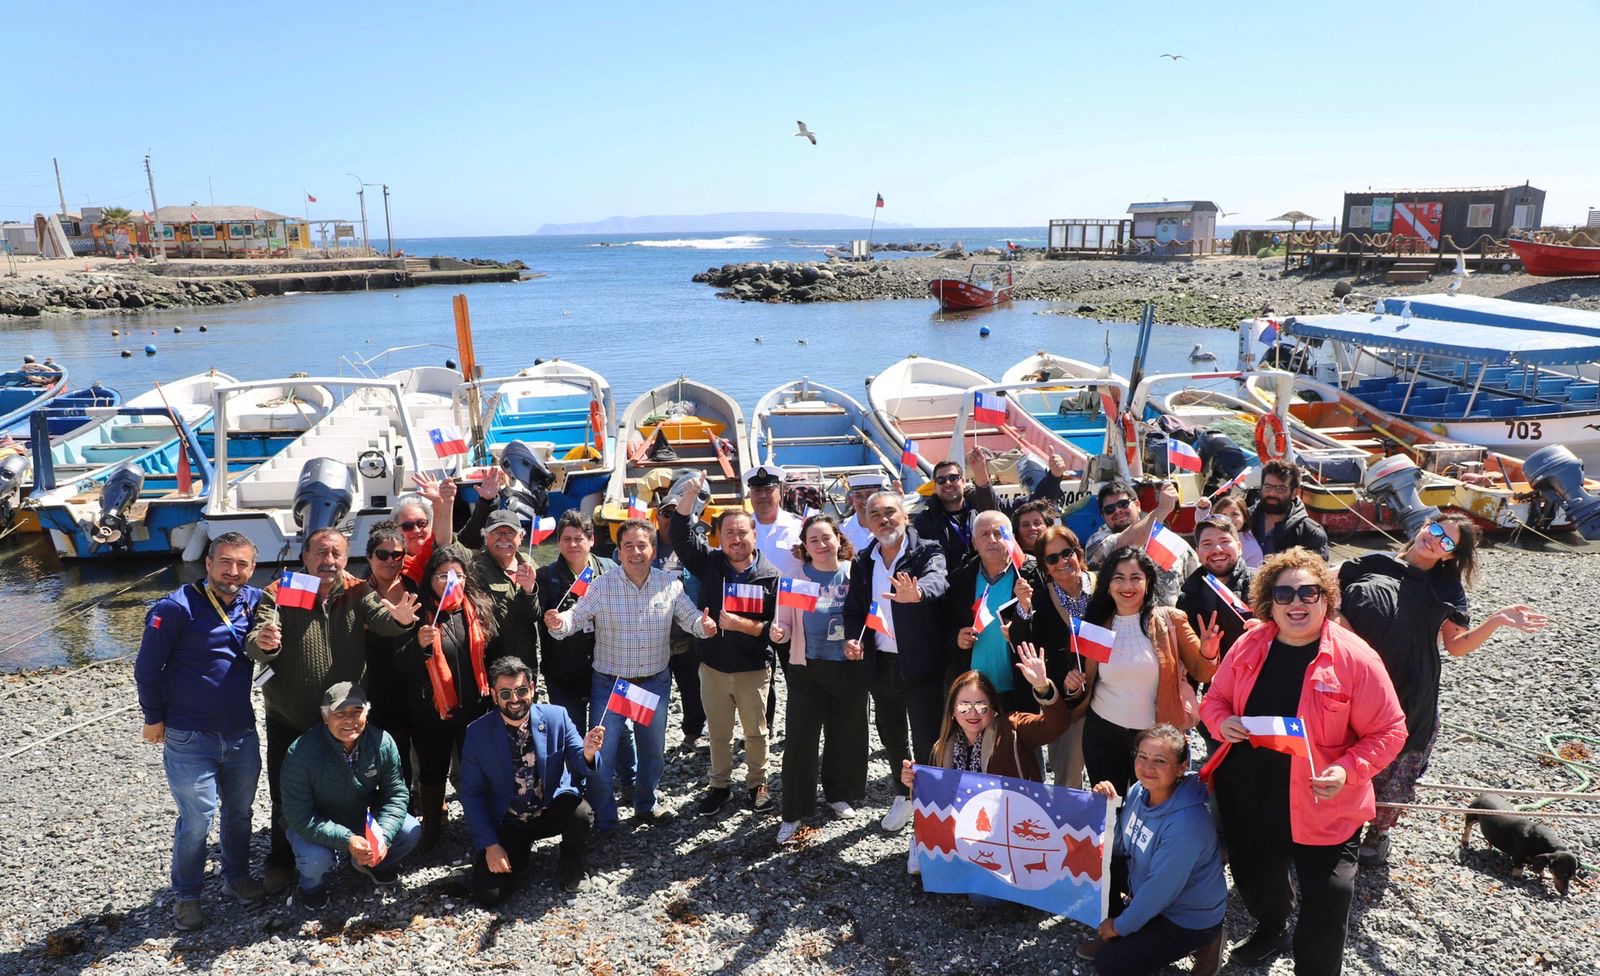 Autoridades de Atacama y comunidad de Chañaral de Aceituno celebran ampliación del área marina costera protegida de múltiples usos Archipiélago de Humboldt